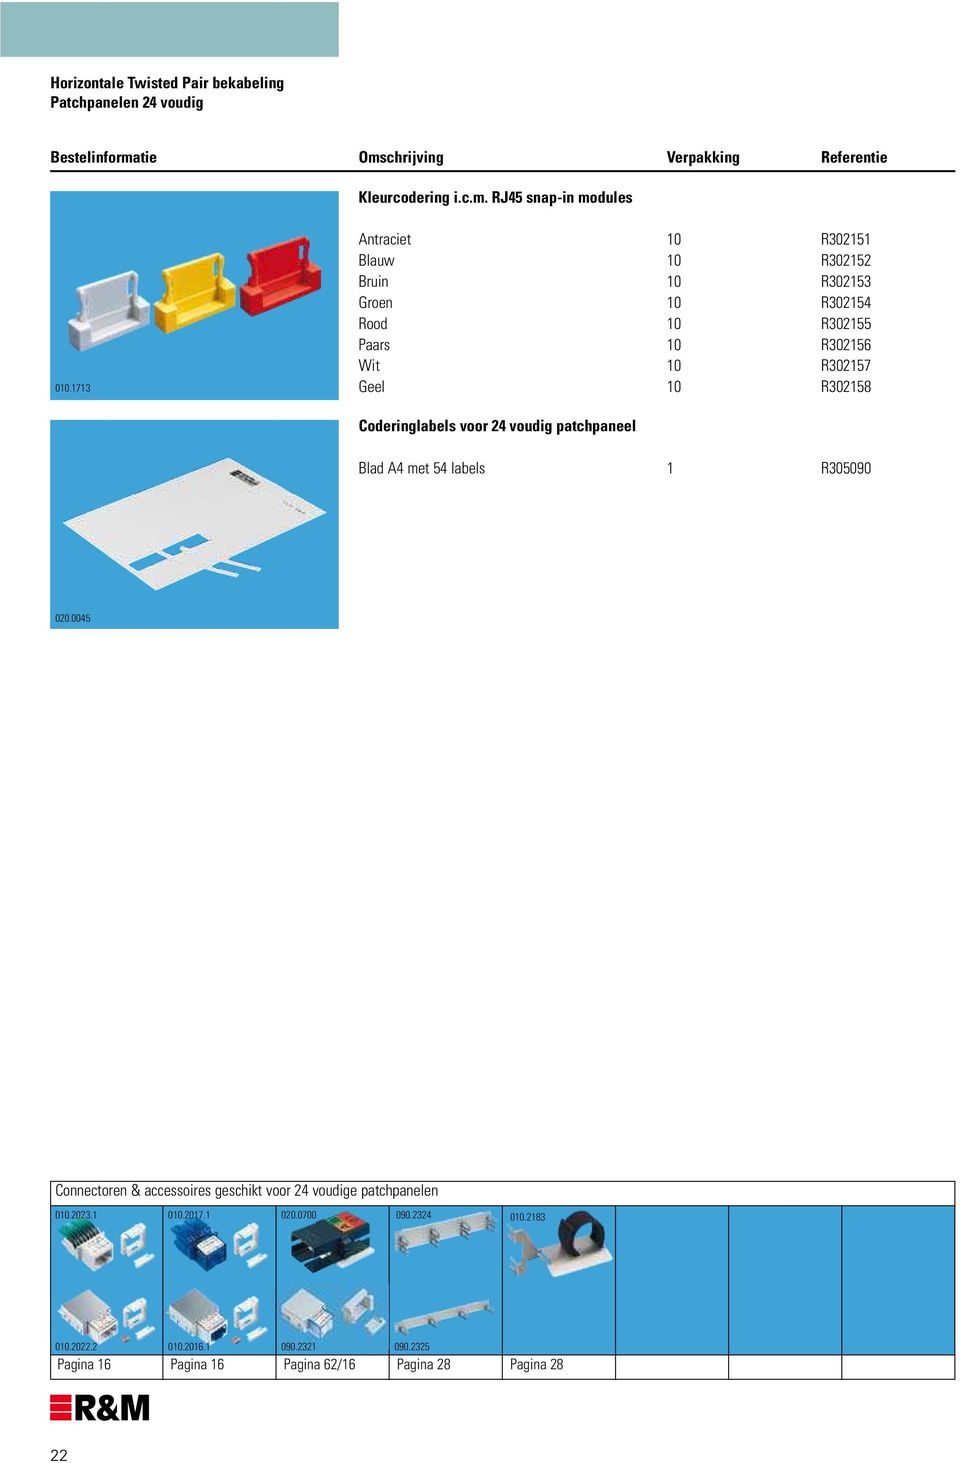 Geel 10 R302158 Coderinglabels voor 24 voudig patchpaneel Blad A4 met 54 labels 1 R305090 020.